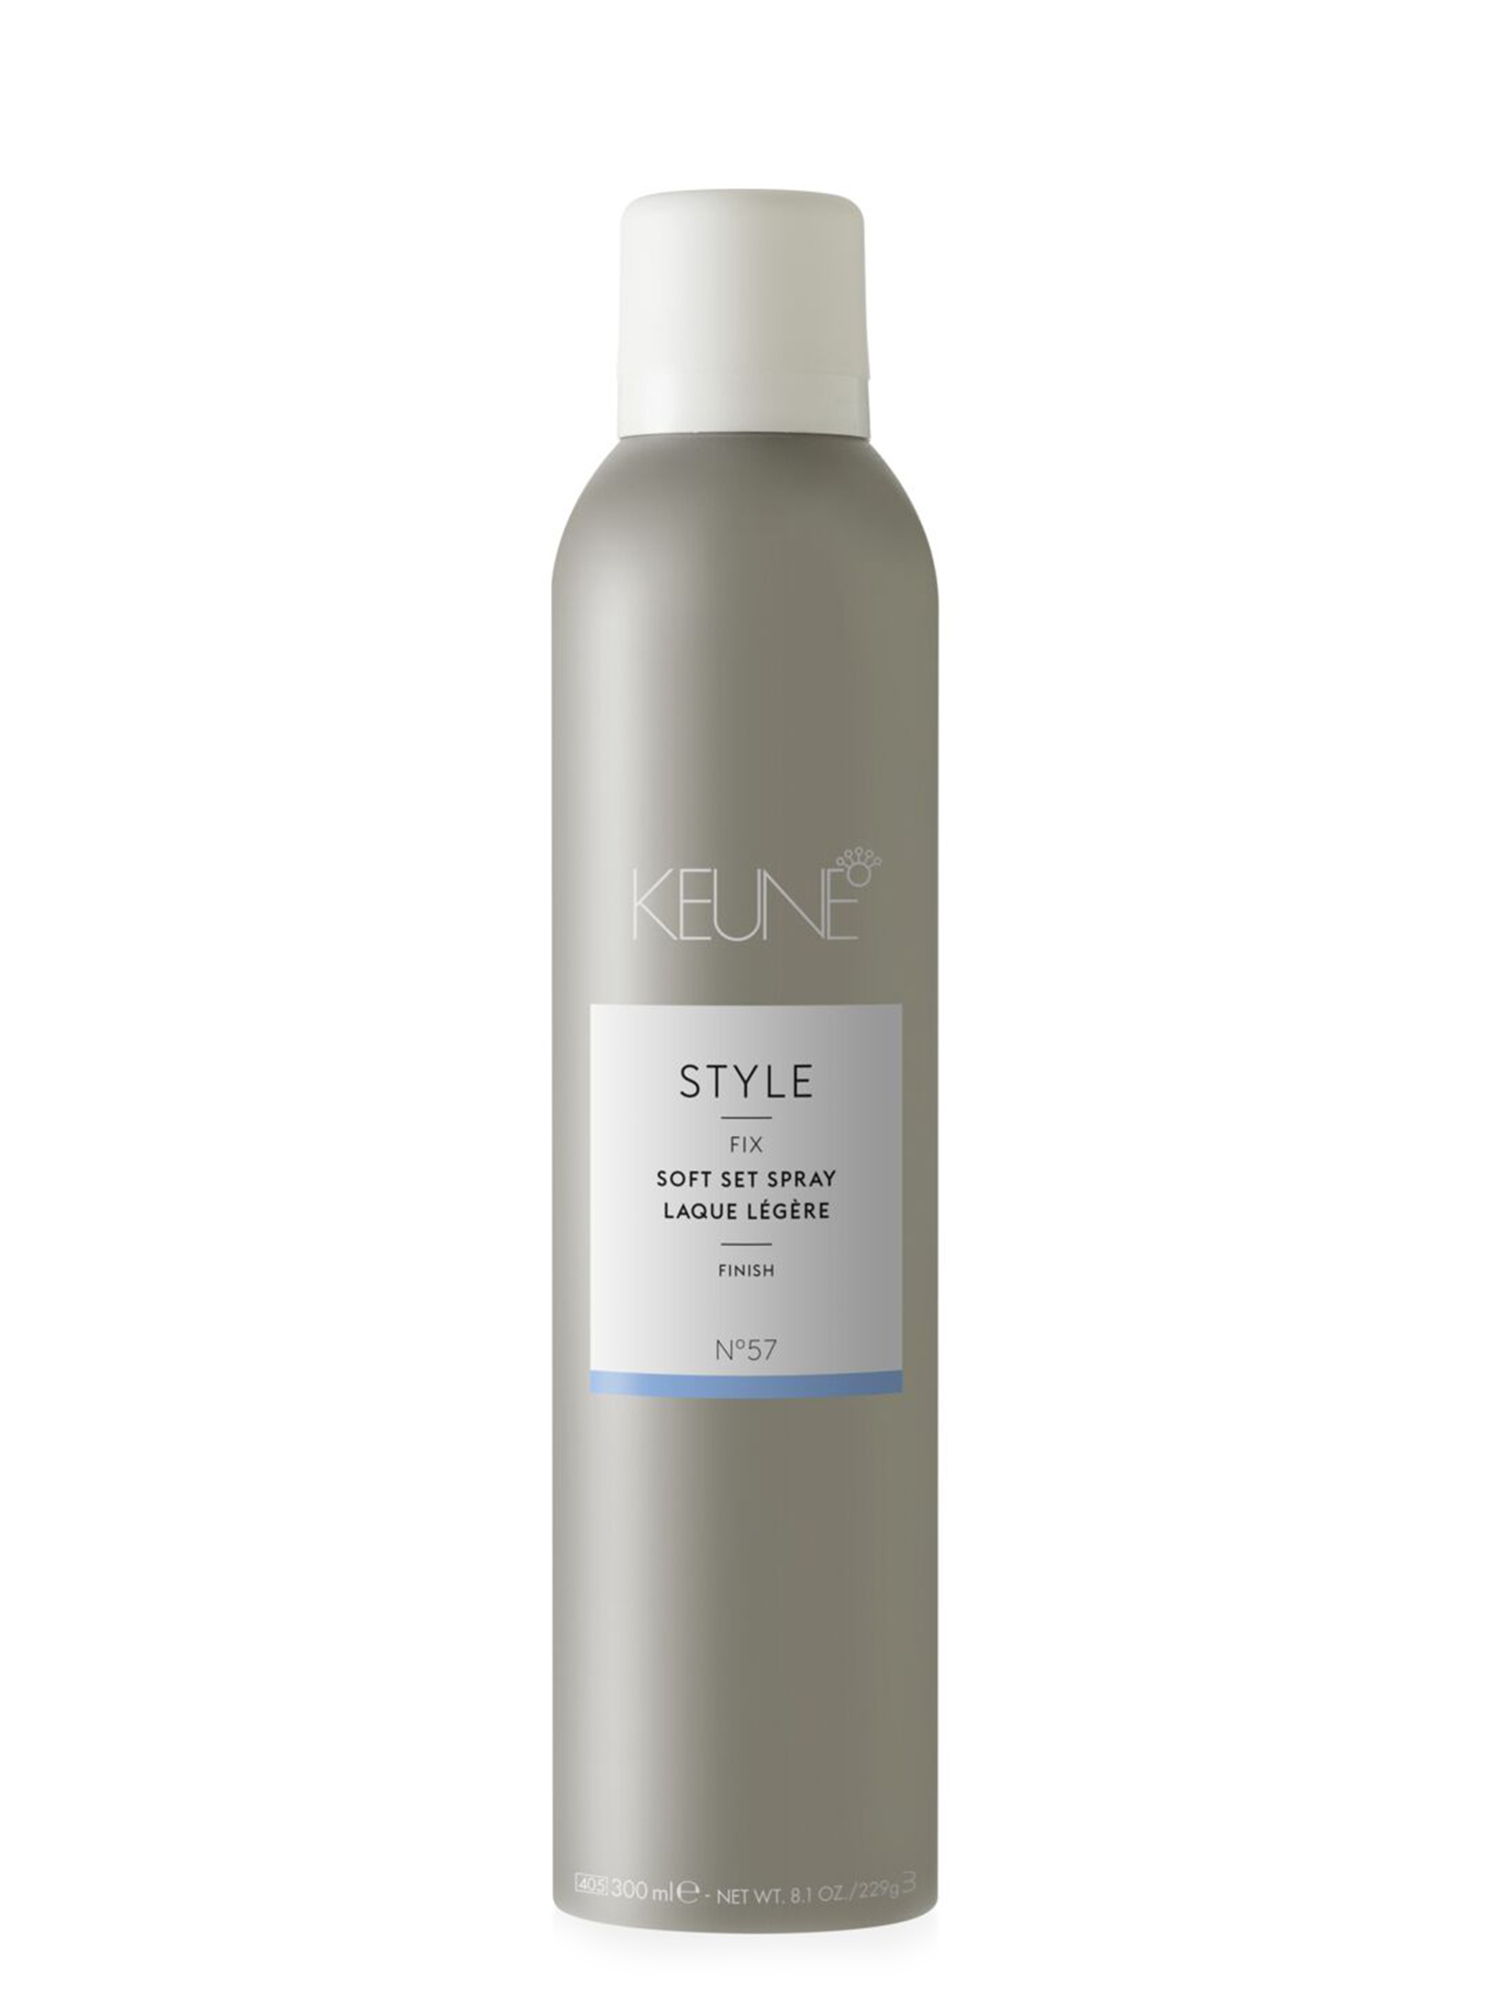 STYLE SOFT SET SPRAY: Flexibles Arbeits-Haarspray für mittleren Halt und Volumen Haare, leicht ausbürstbar. Perfektes Haarprodukt für den Alltag auf keune.ch.